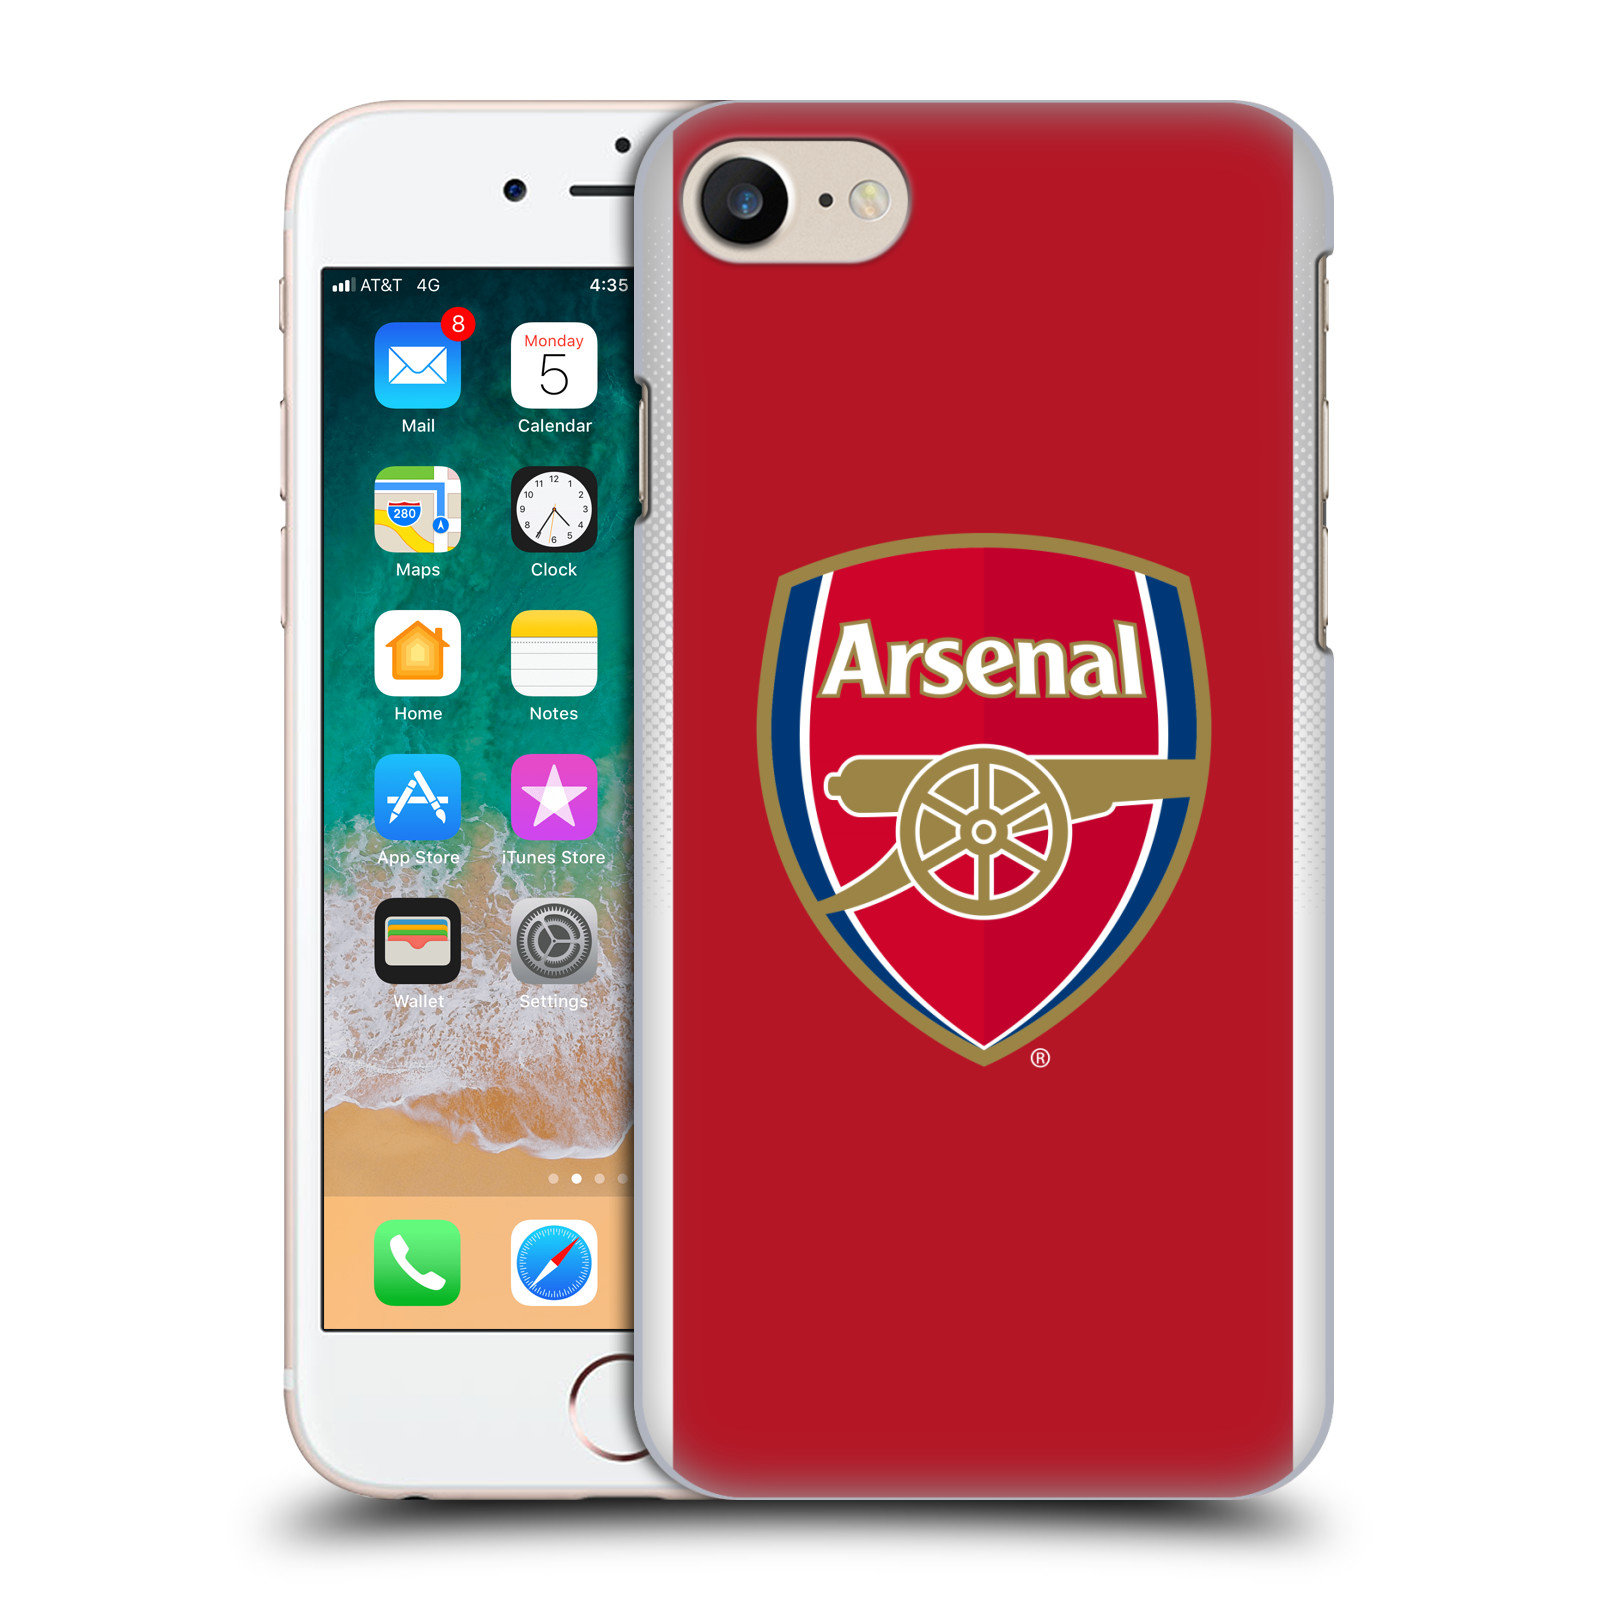 Plastové pouzdro na mobil Apple iPhone 7 - Head Case - Arsenal FC - Logo klubu (Plastový kryt či obal na mobilní telefon s motivem klubu Arsenal FC - Logo klubu pro Apple iPhone 7)